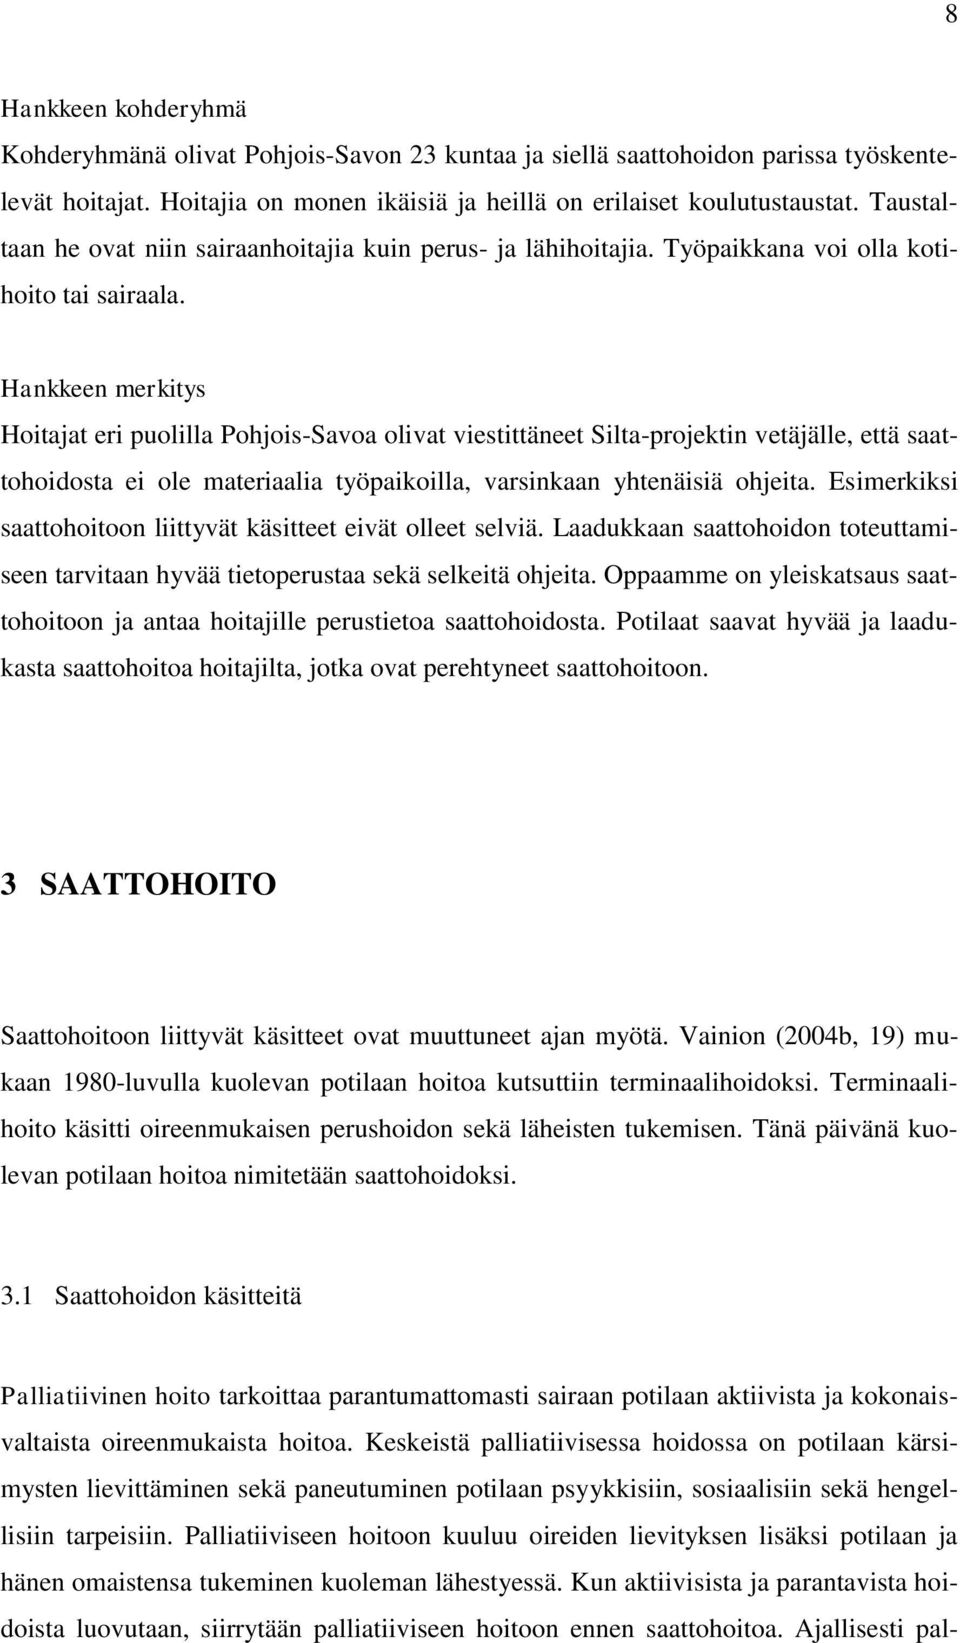 Hankkeen merkitys Hoitajat eri puolilla Pohjois-Savoa olivat viestittäneet Silta-projektin vetäjälle, että saattohoidosta ei ole materiaalia työpaikoilla, varsinkaan yhtenäisiä ohjeita.